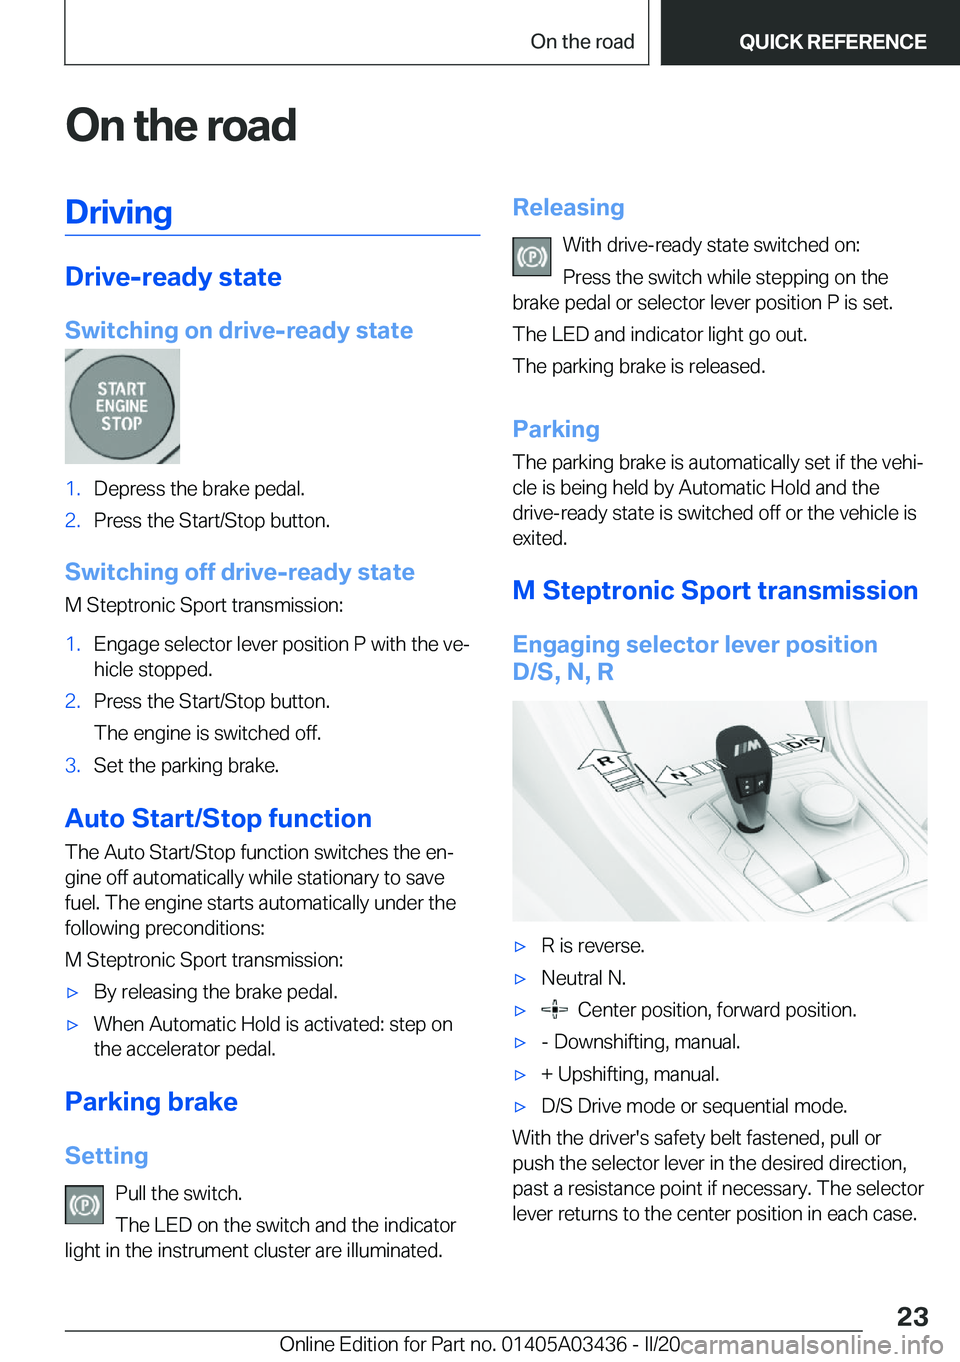 BMW X6 M 2020 Owners Manual �O�n��t�h�e��r�o�a�d�D�r�i�v�i�n�g
�D�r�i�v�e�-�r�e�a�d�y��s�t�a�t�e
�S�w�i�t�c�h�i�n�g��o�n��d�r�i�v�e�-�r�e�a�d�y��s�t�a�t�e
�1�.�D�e�p�r�e�s�s��t�h�e��b�r�a�k�e��p�e�d�a�l�.�2�.�P�r�e�s�s�